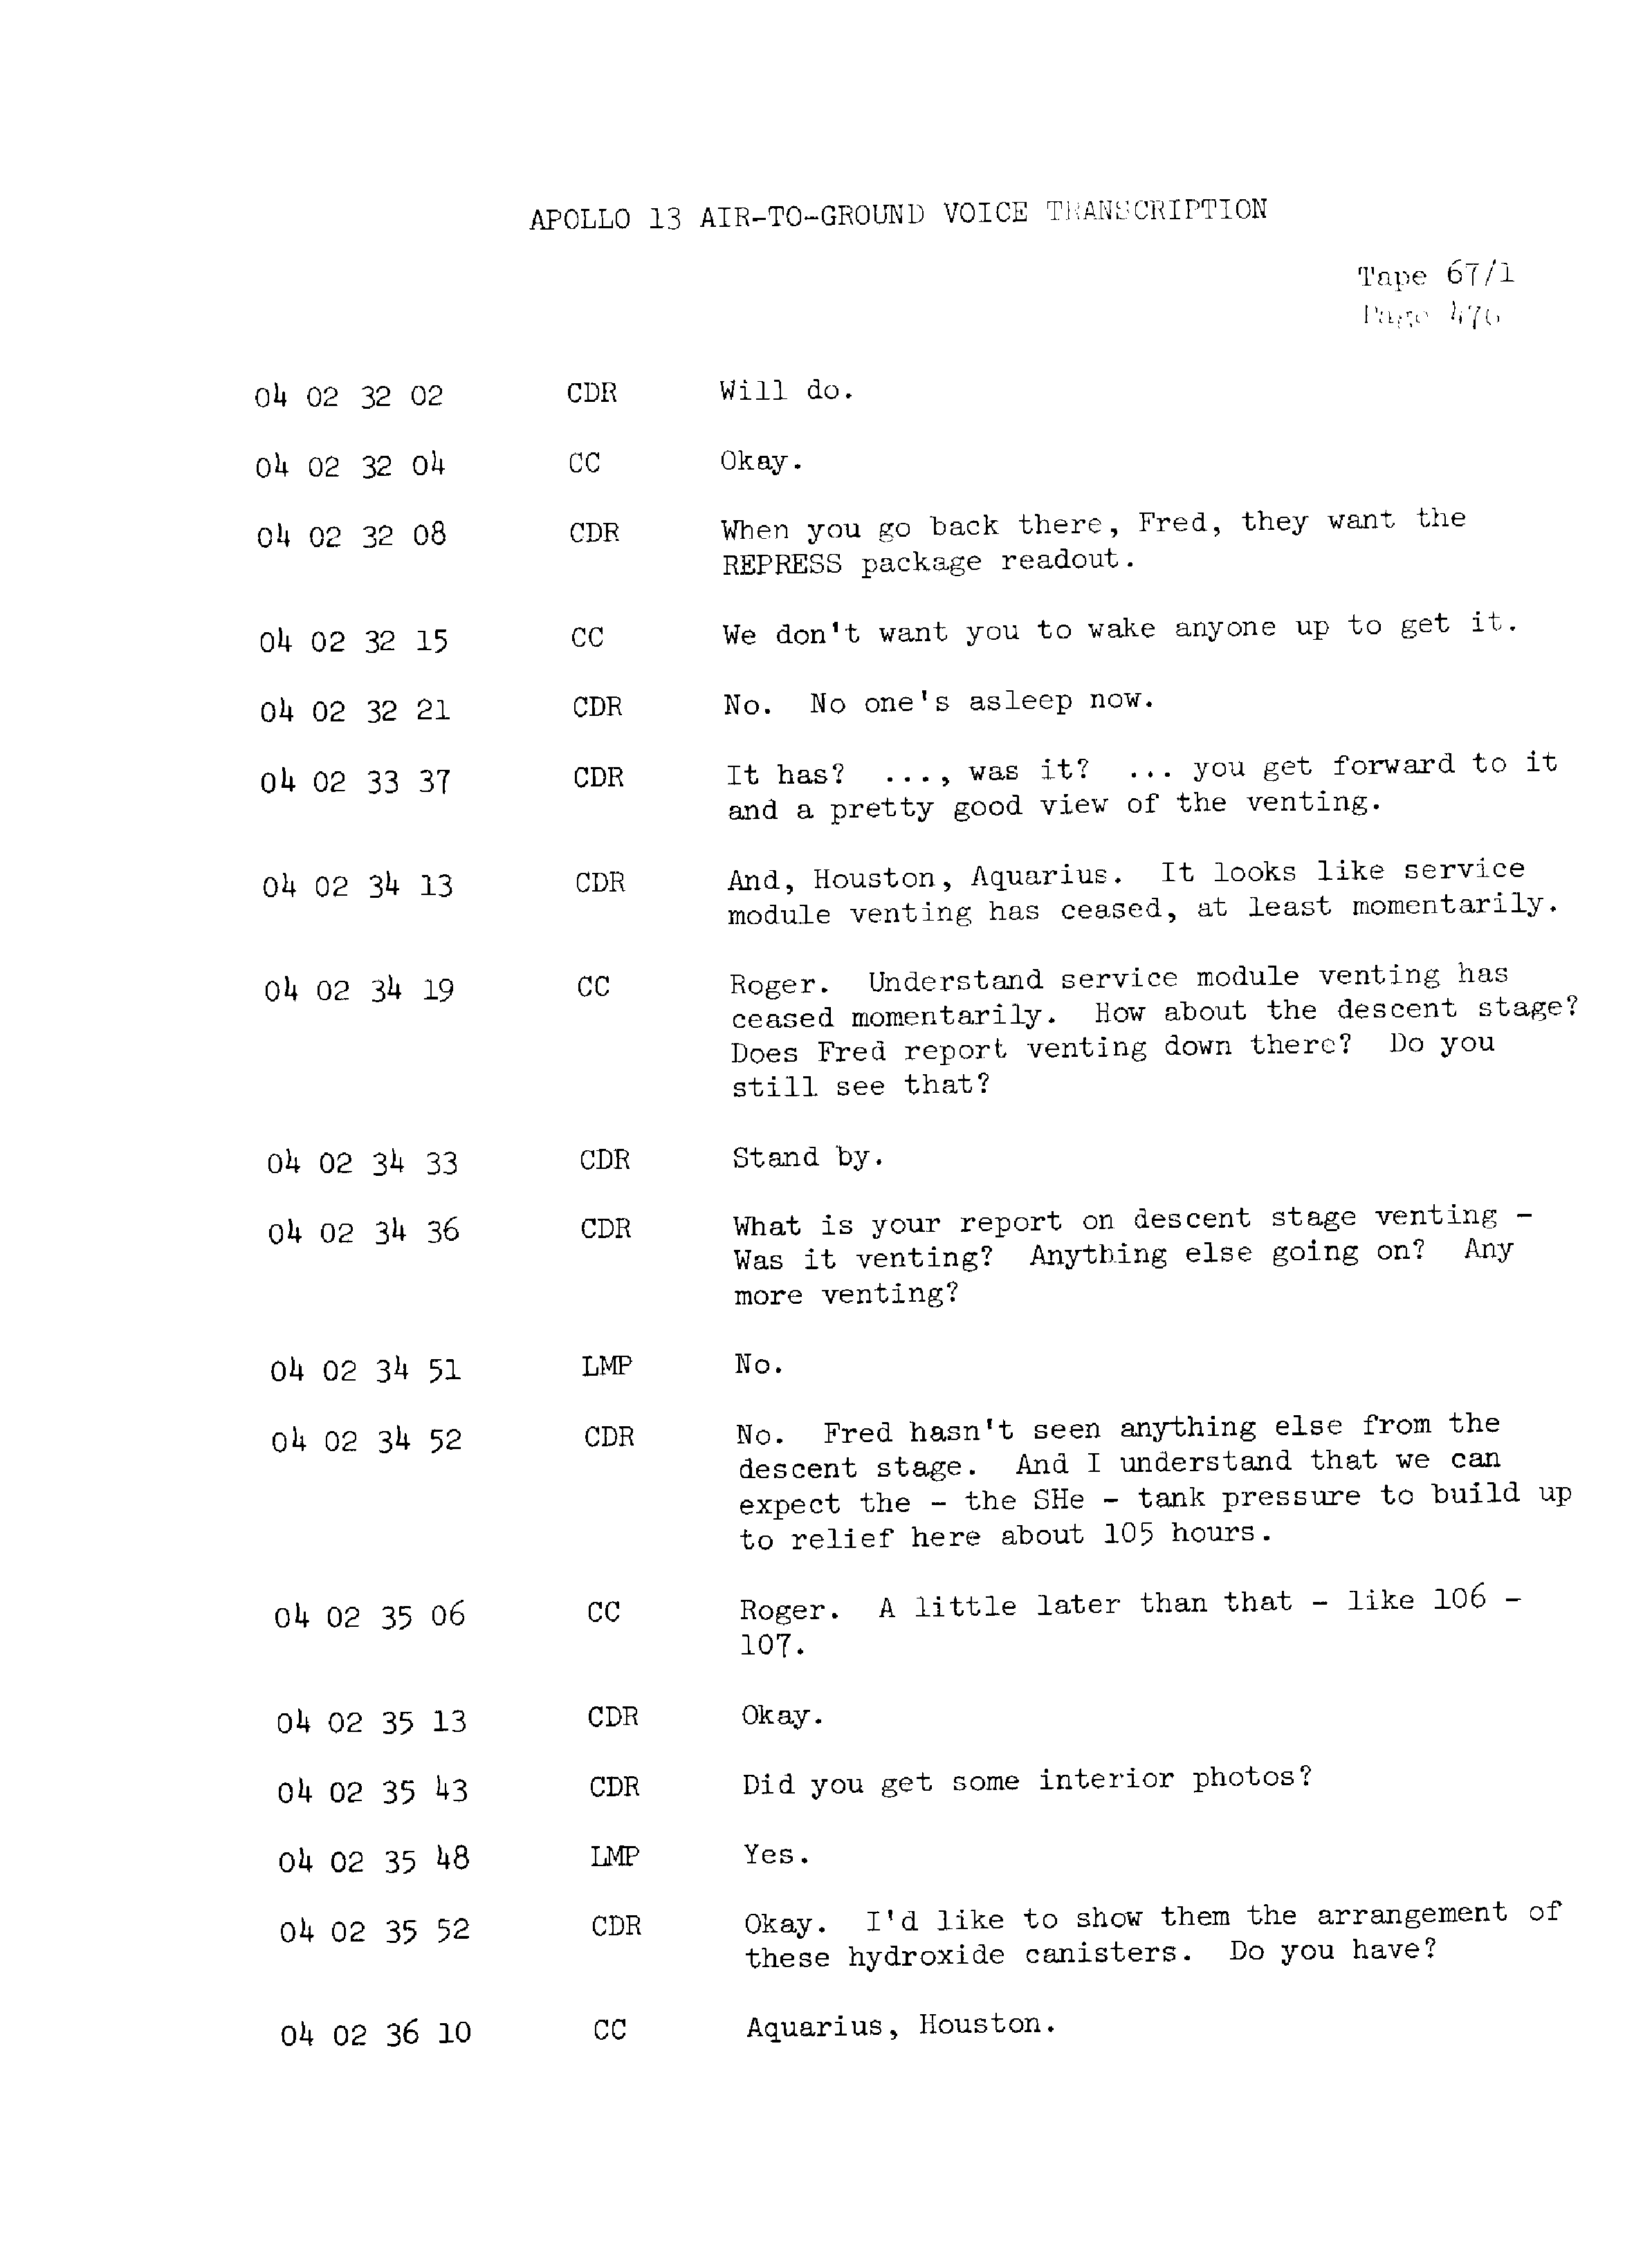 Page 483 of Apollo 13’s original transcript